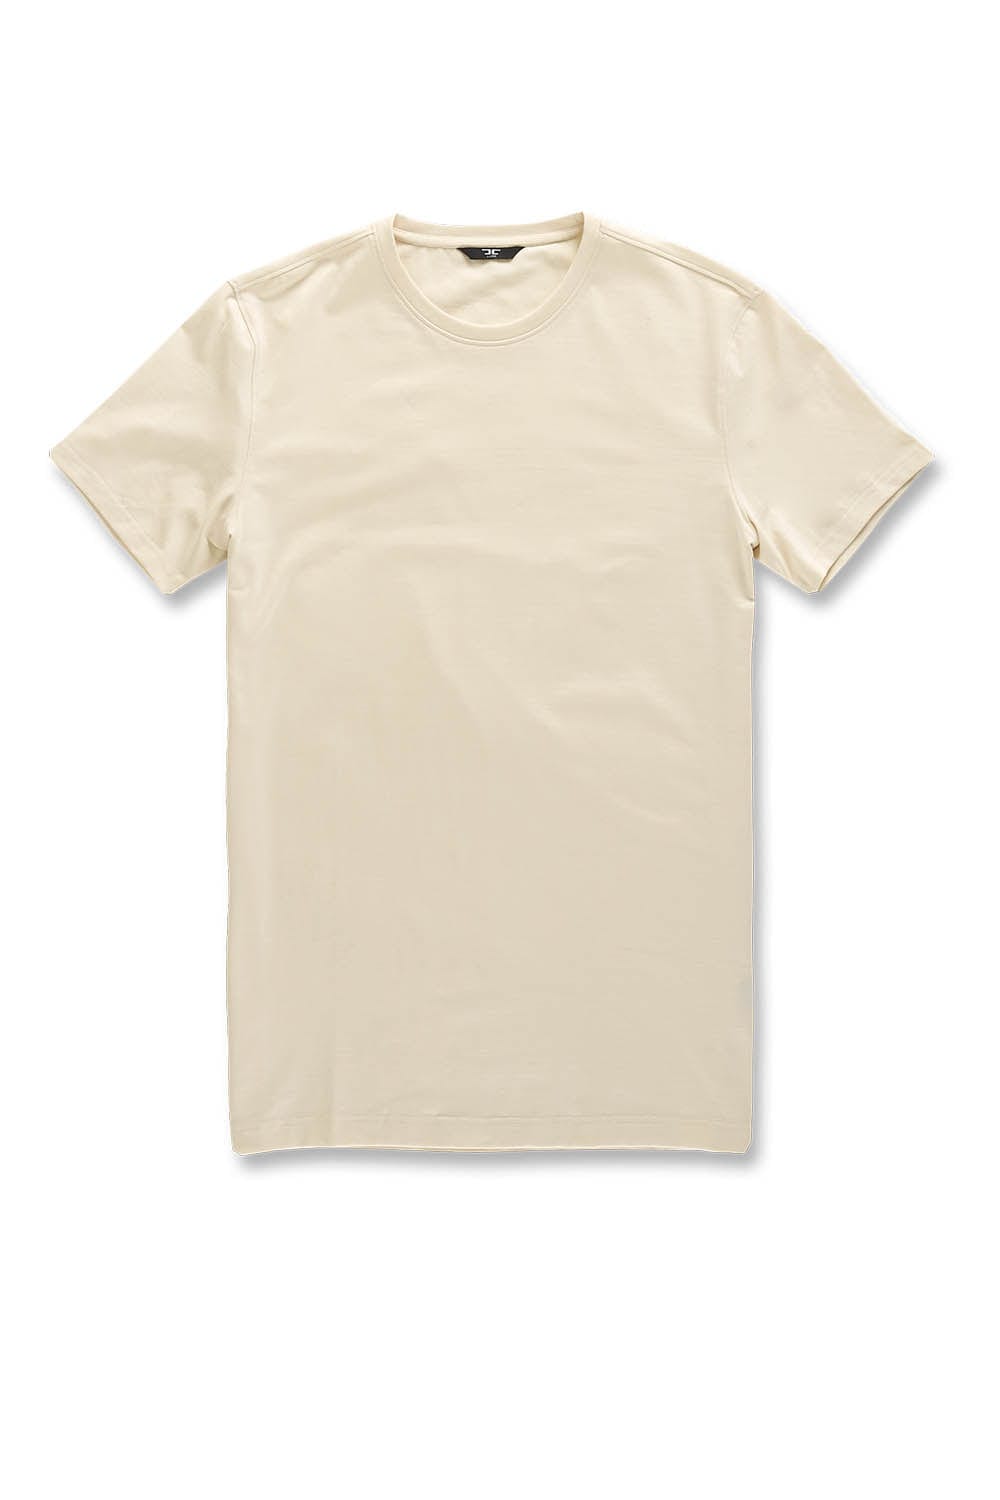 Jordan Craig Premium Crewneck T-Shirt Cream / S